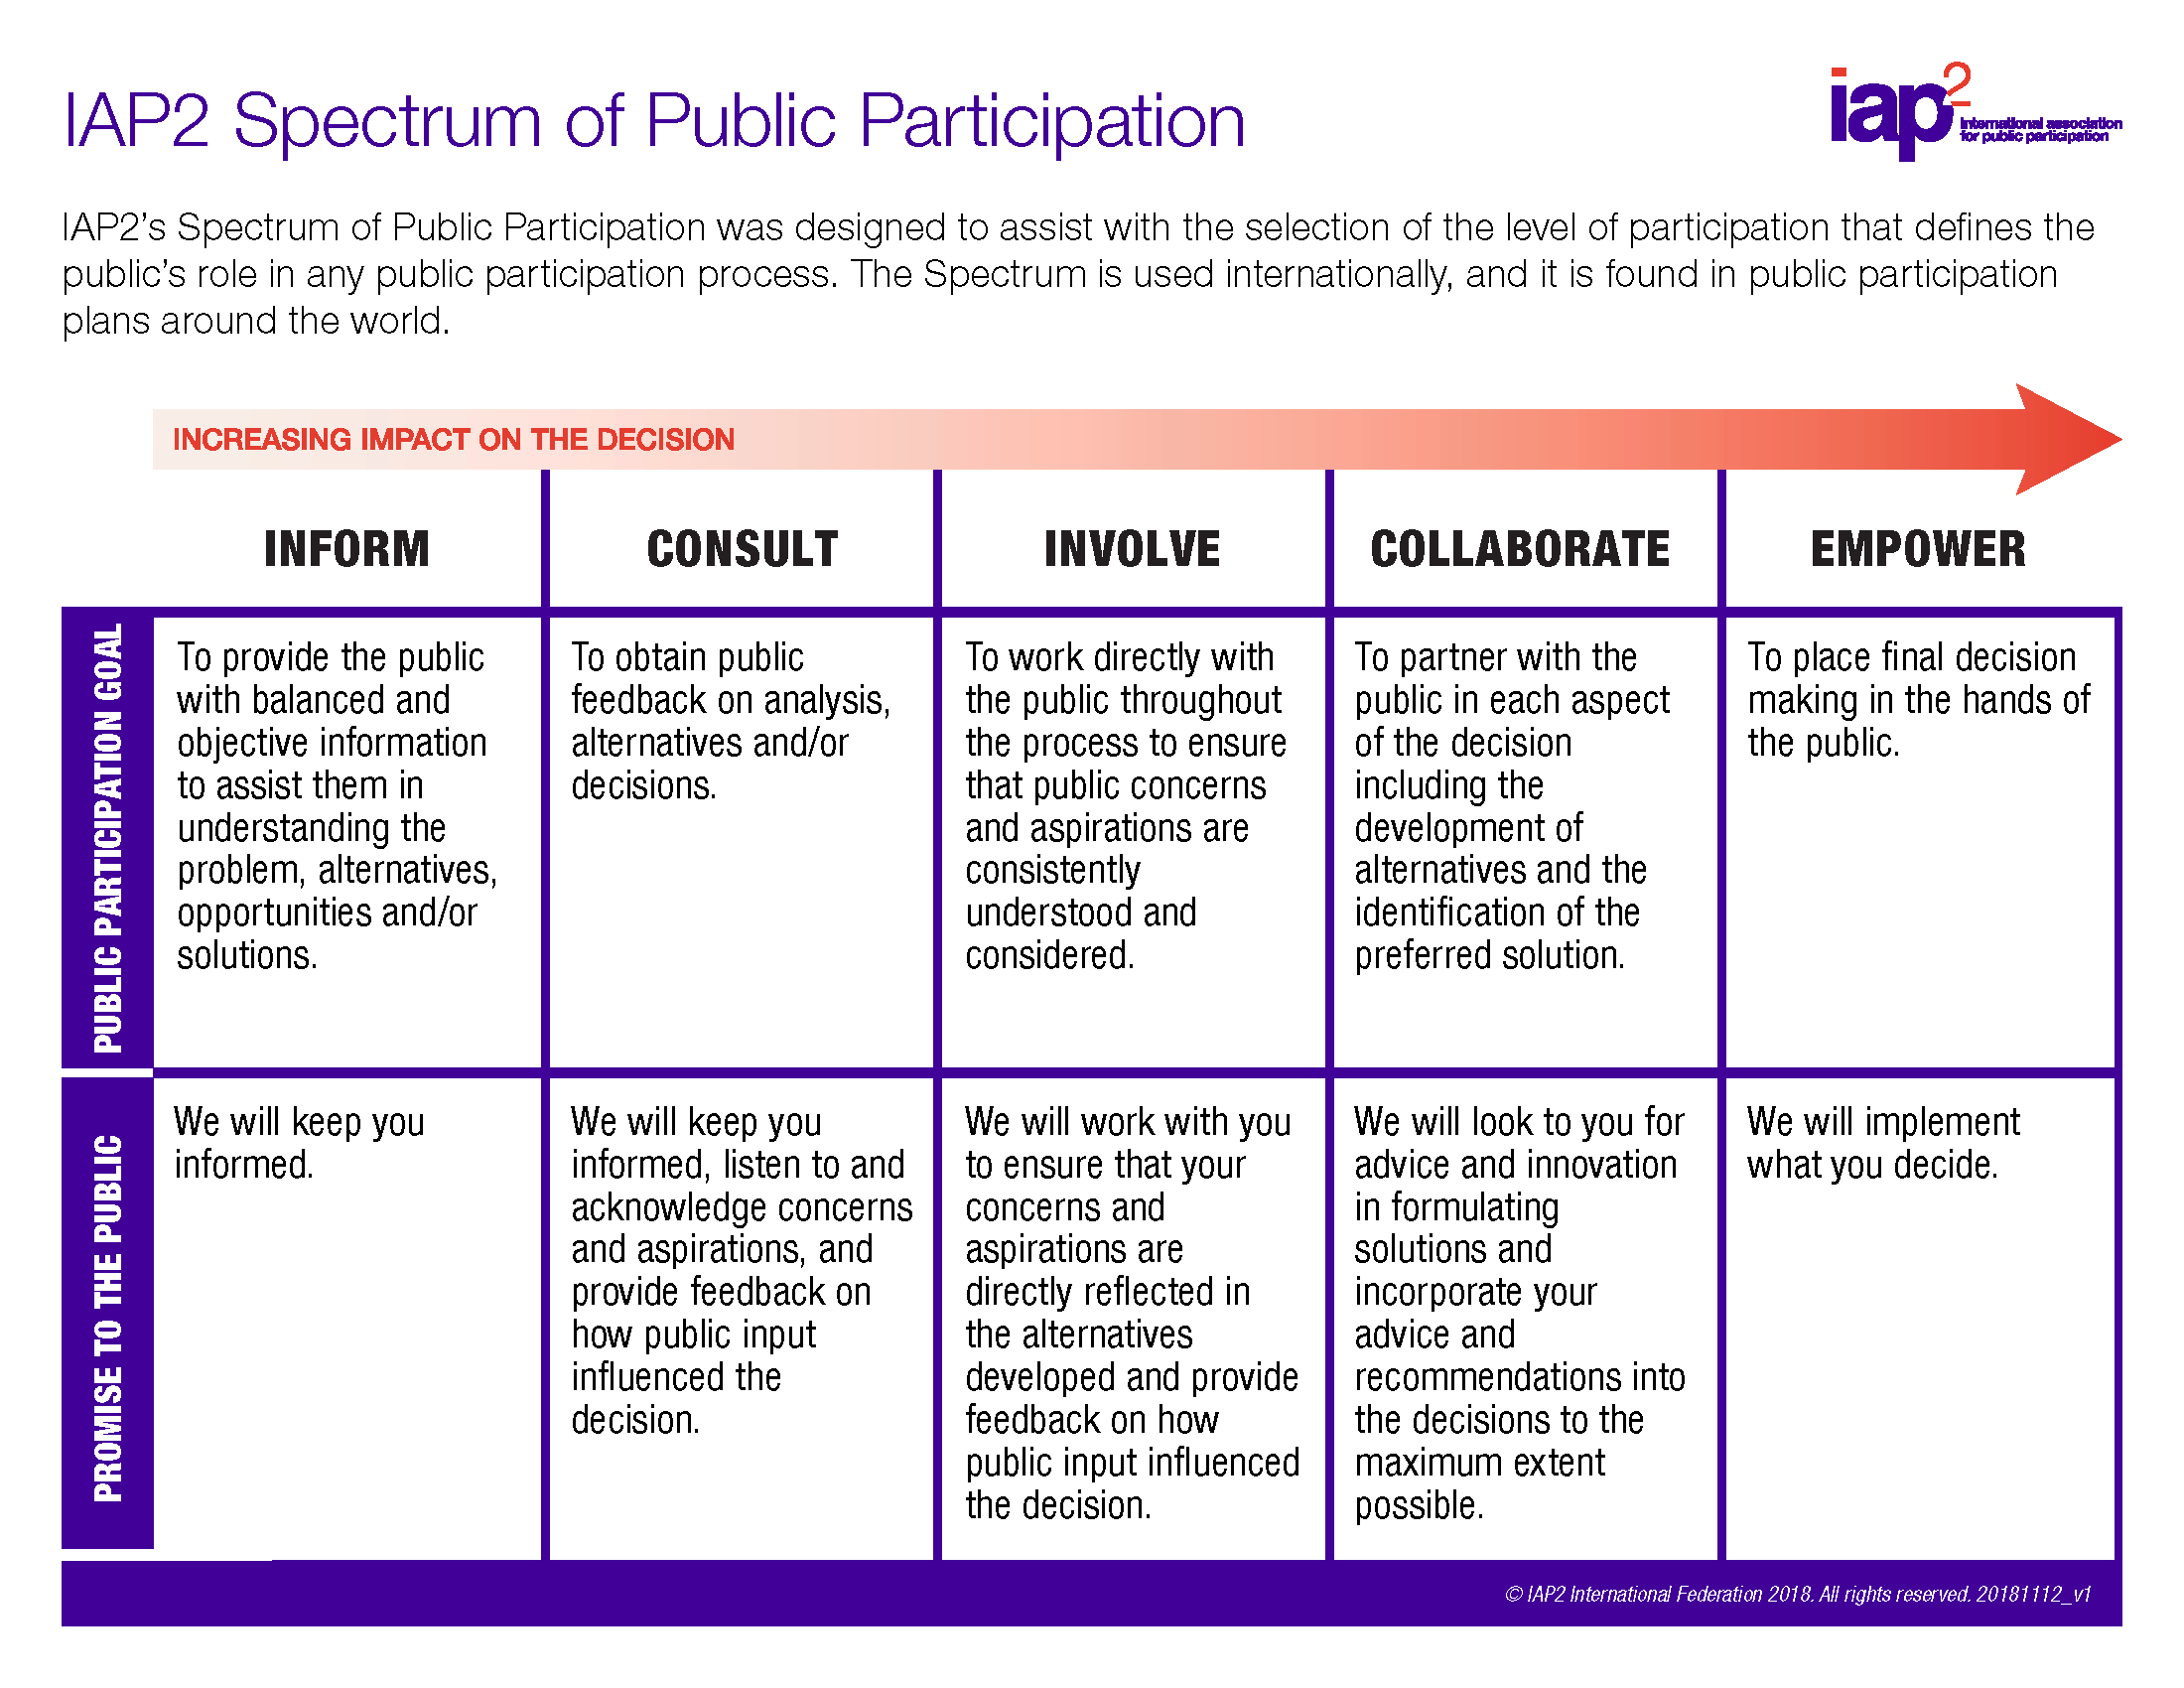 IAP2’s Spectrum of Public Participation